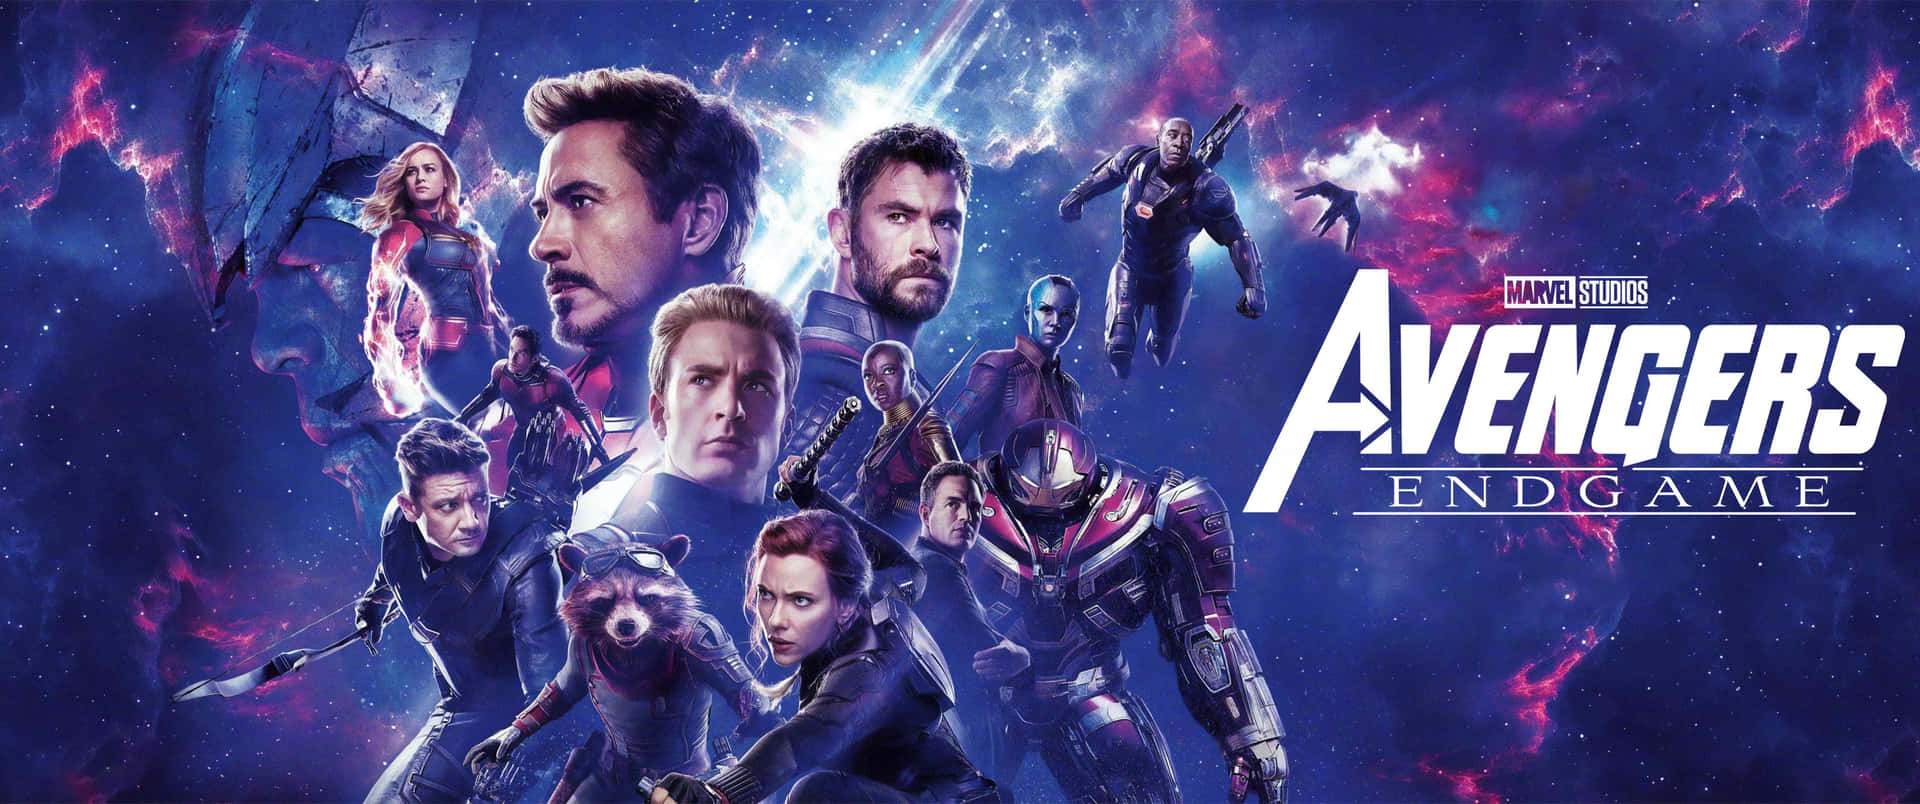 3440x 1440 Avengers Endgame Von Marvel. Wallpaper